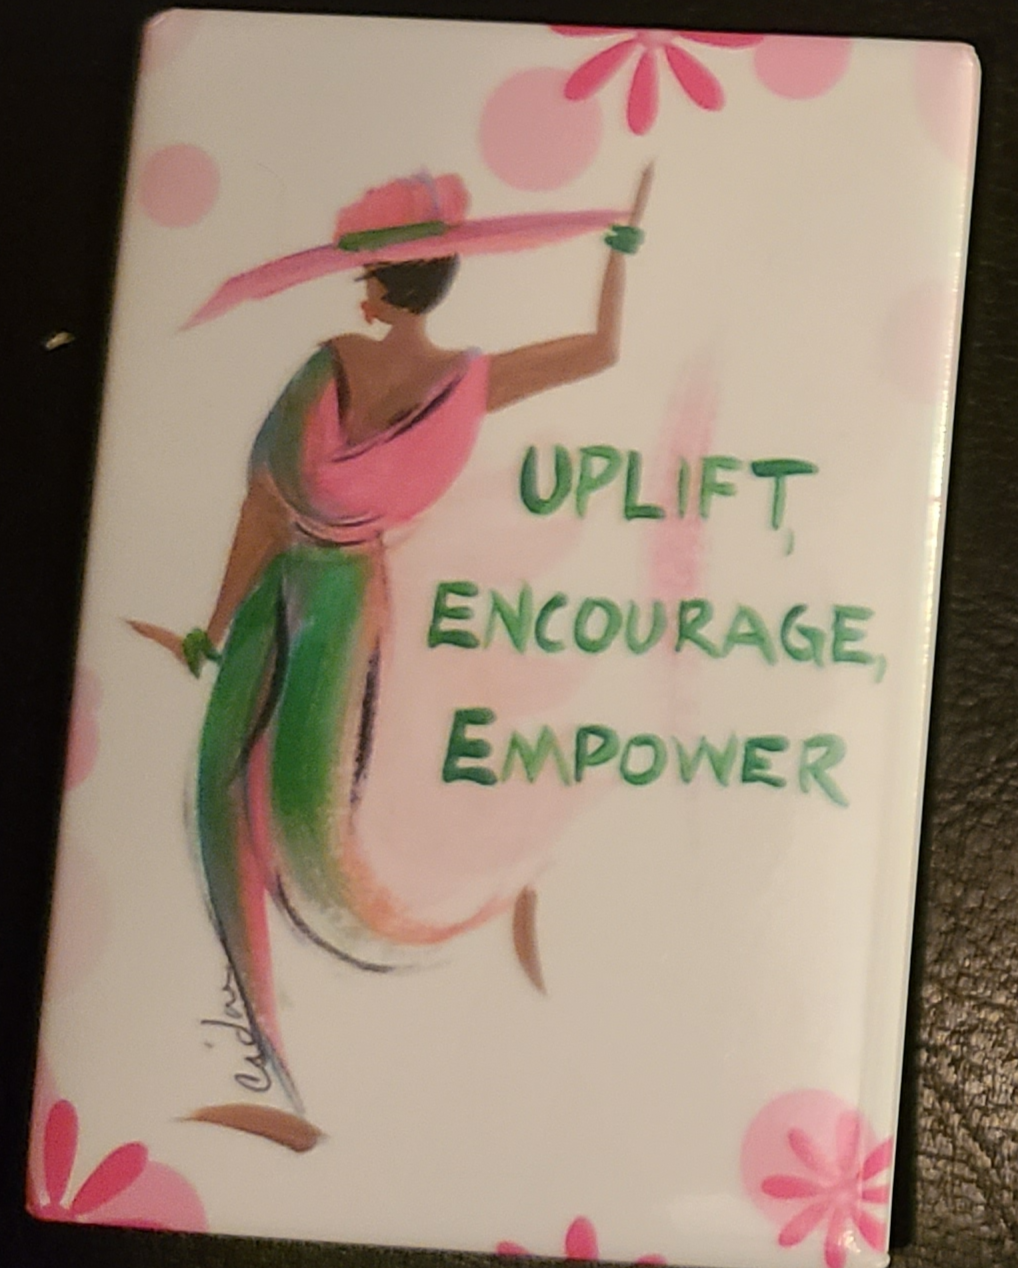 Uplift, Encourage, Empower